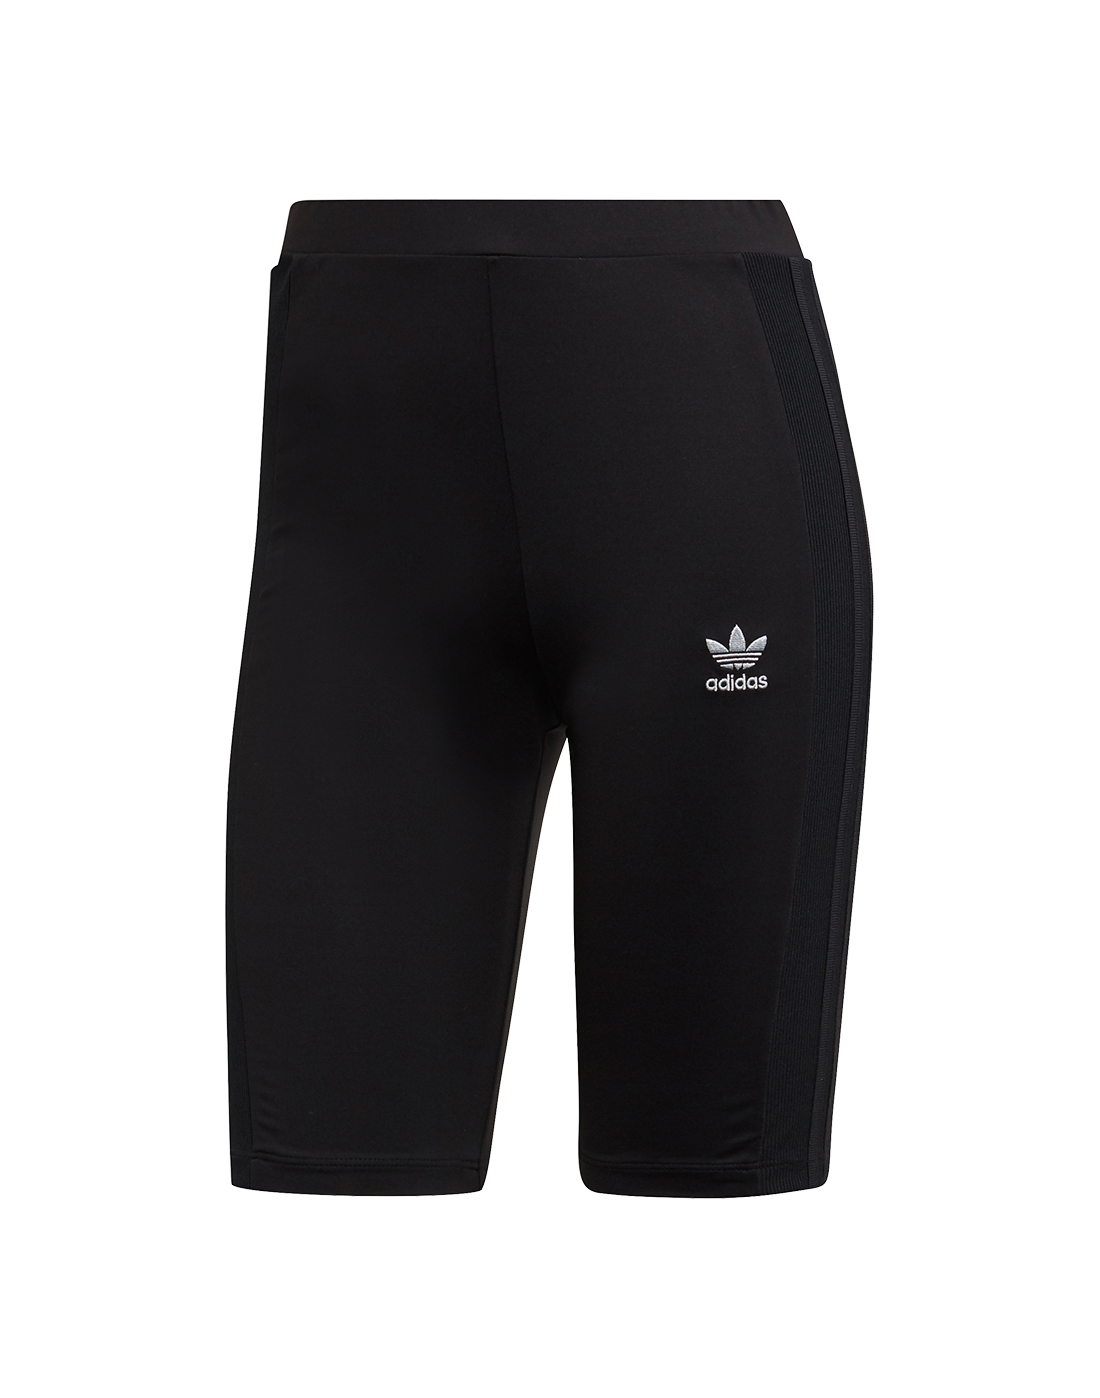 black adidas cycle shorts